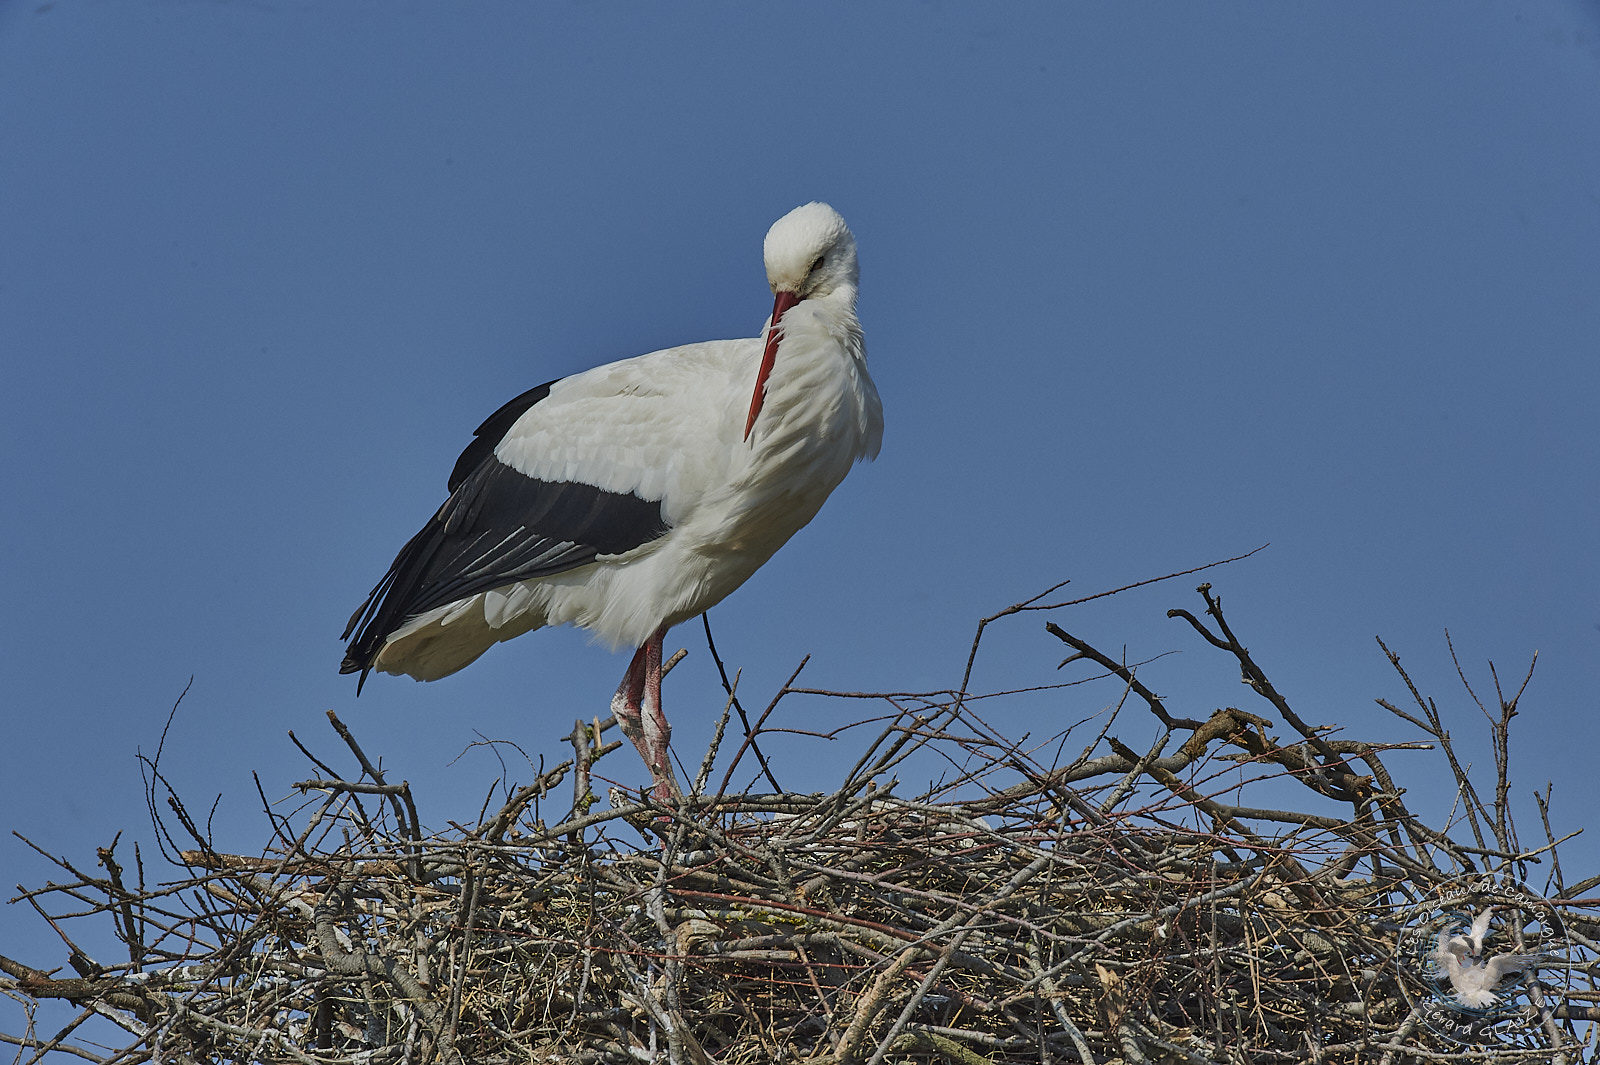 Cigogne blanche - White Stork